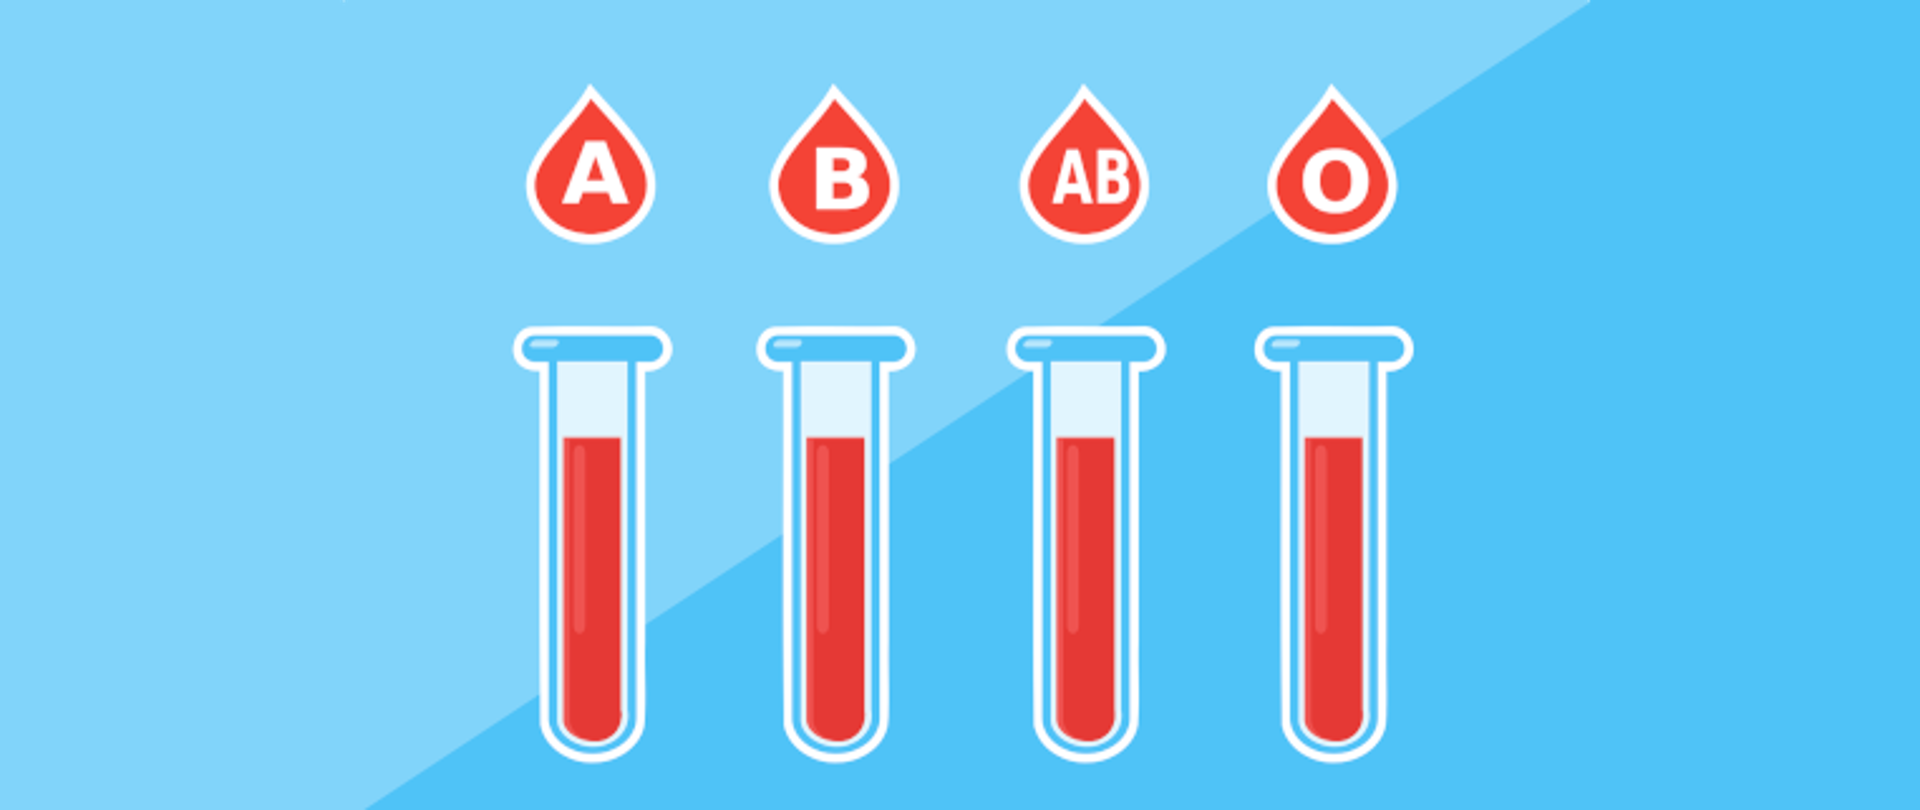 Grafika przedstawia na niebieskim tle cztery probówki z czerwoną zawartością. Nad probówkami widnieją cztery czerwone krople z białymi literami: A, B, AB,0.